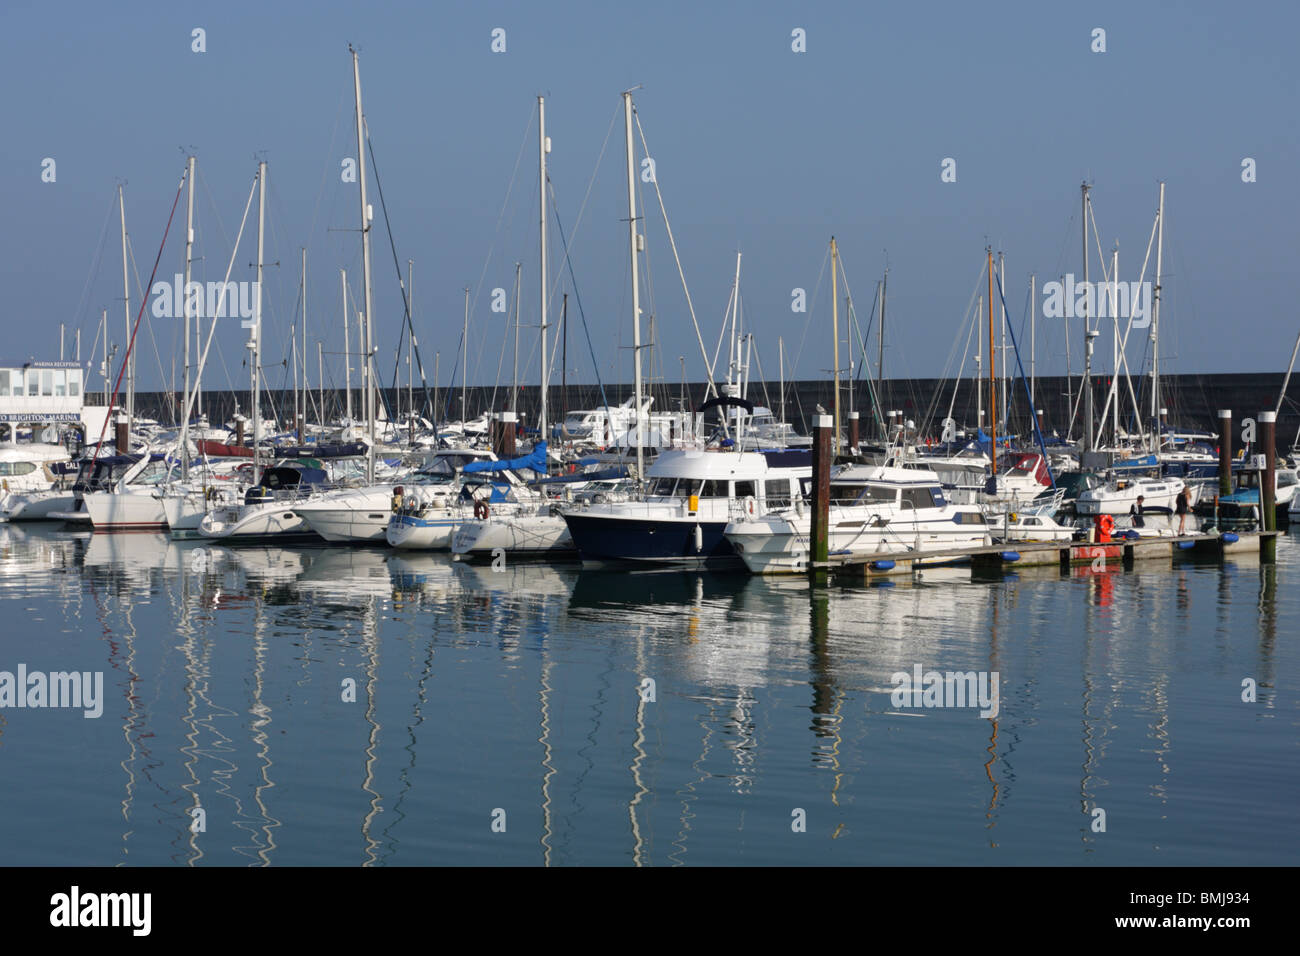 Uno de (17) imágenes en el Brighton Marina. Diversas imágenes verticales y horizontales para ponderar, por favor disfrute. Foto de stock